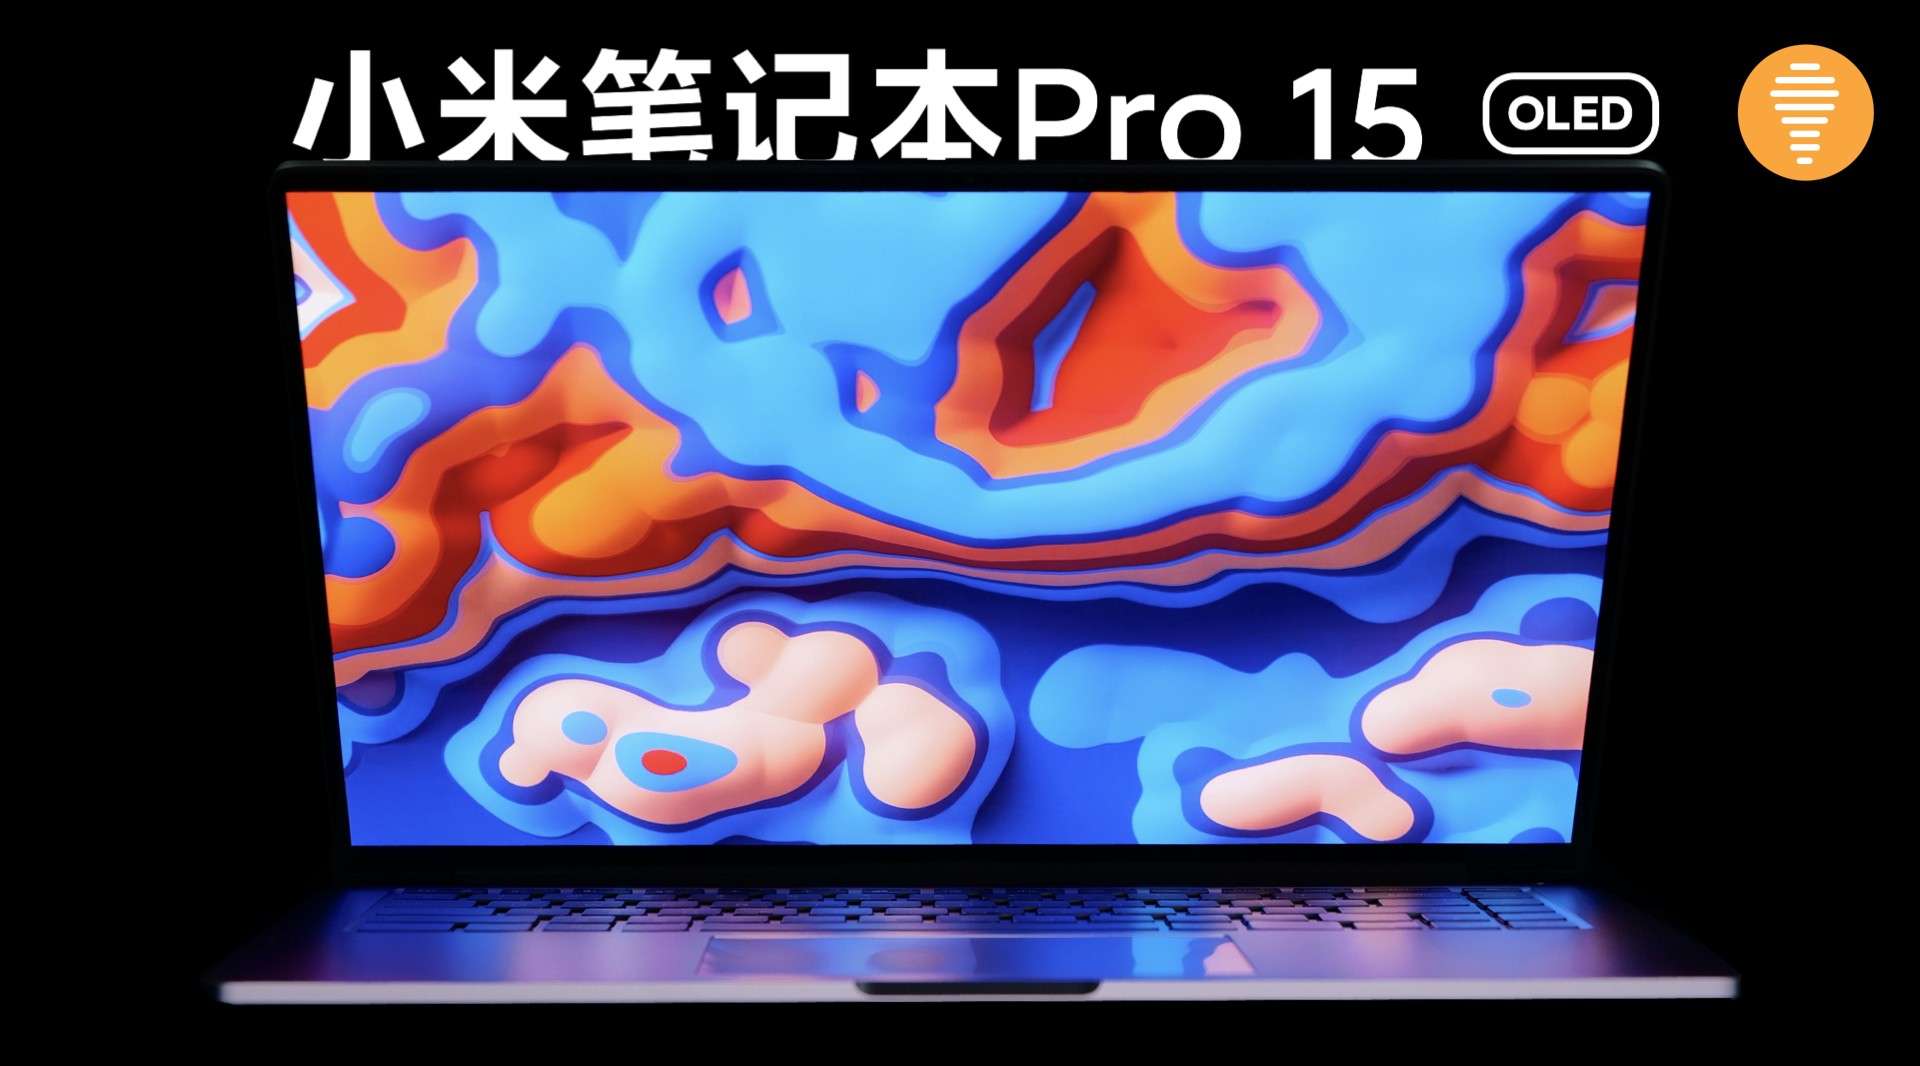 一起来看看全新小米笔记本Pro 15